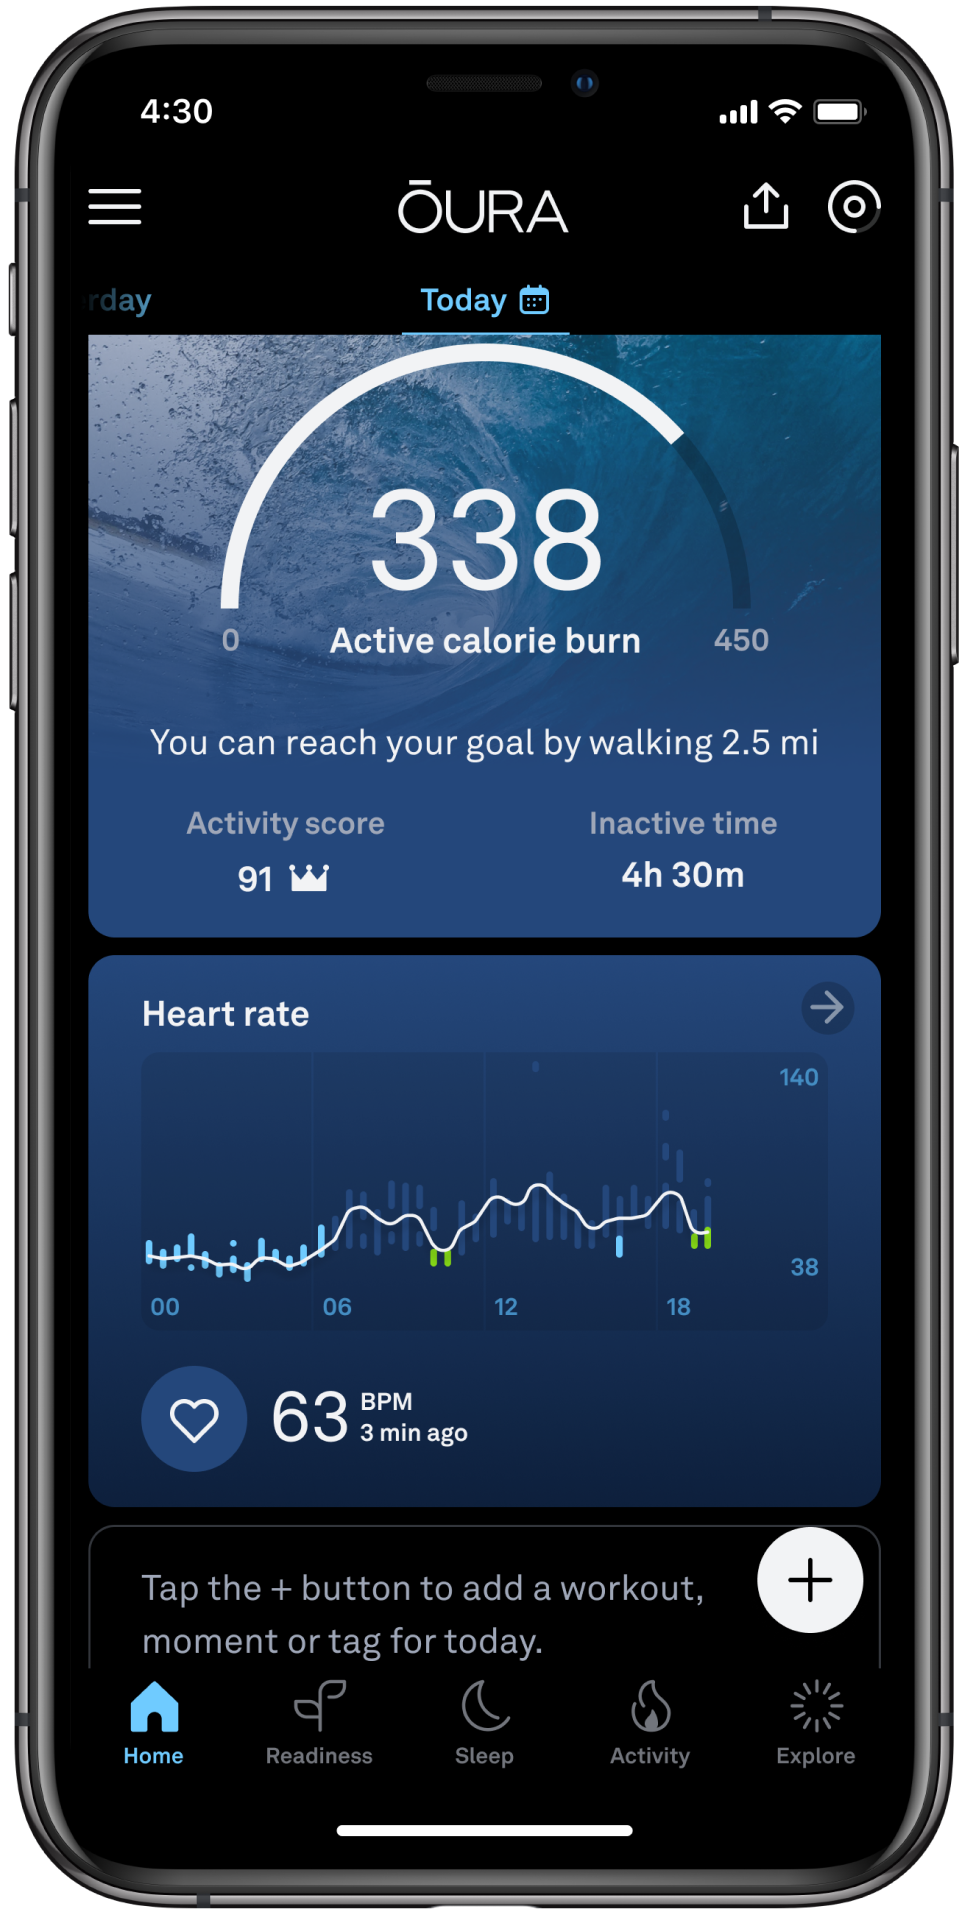 Der Startbildschirm der Oura App, der die 24-Stunden-Herzfrequenzkurve anzeigt. Das Diagramm hat farbige Balken: Die blauen zeigen den Ruhepuls und die grünen die Regenerationszeiten.